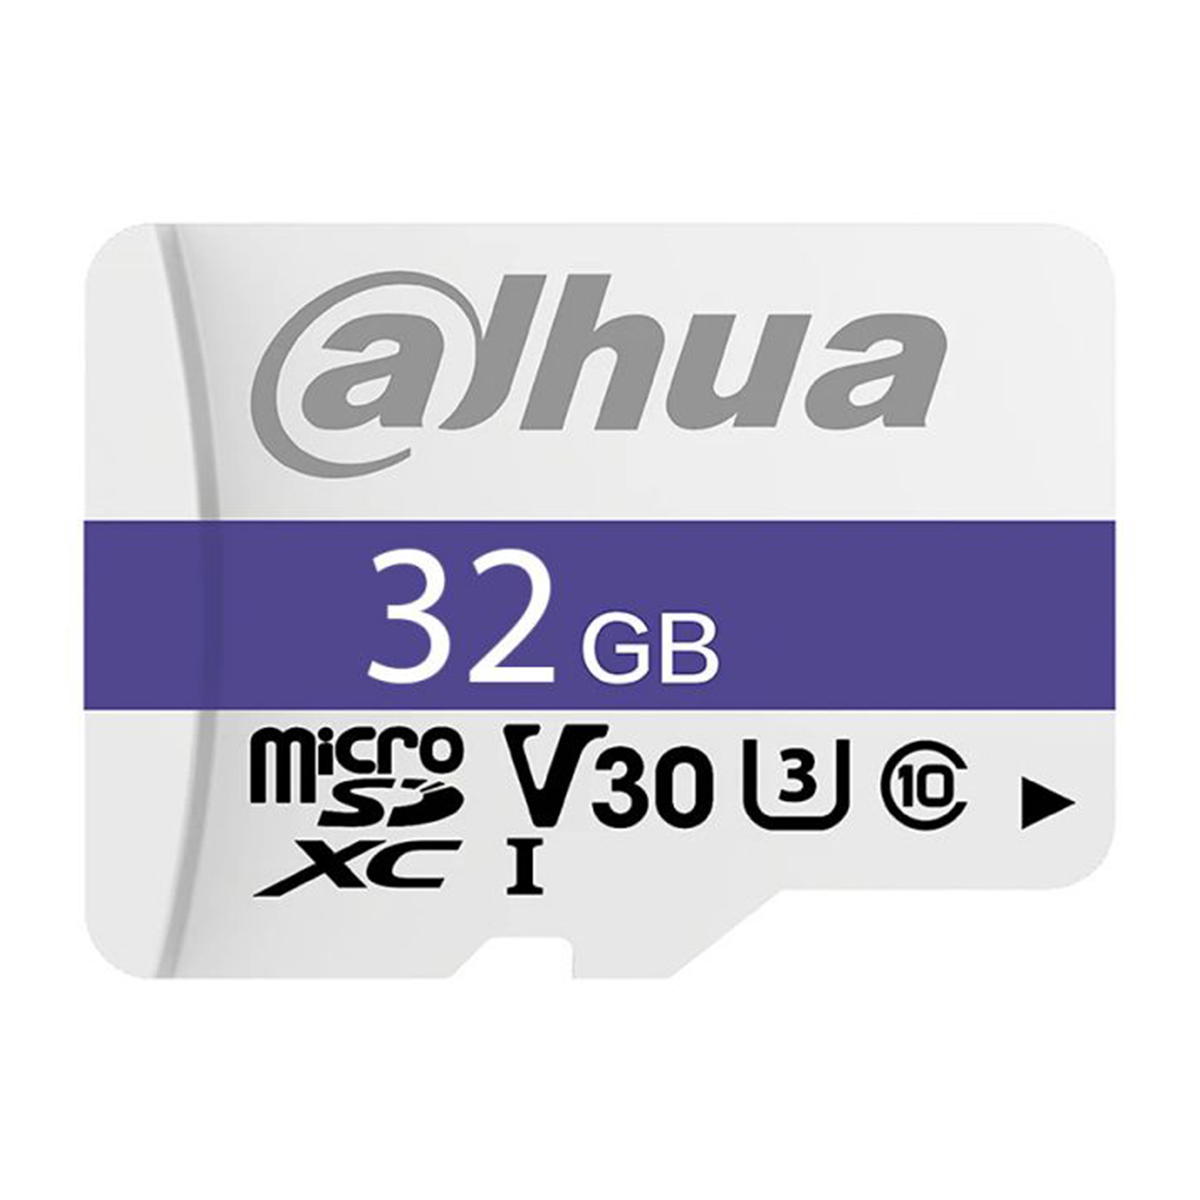 کارت حافظه microSDXC داهوا مدل DHI-TF-C100 کلاس 10 استاندارد UHS-I V10 سرعت 90MBps ظرفیت 32 گیگابایت copy-small-image.png